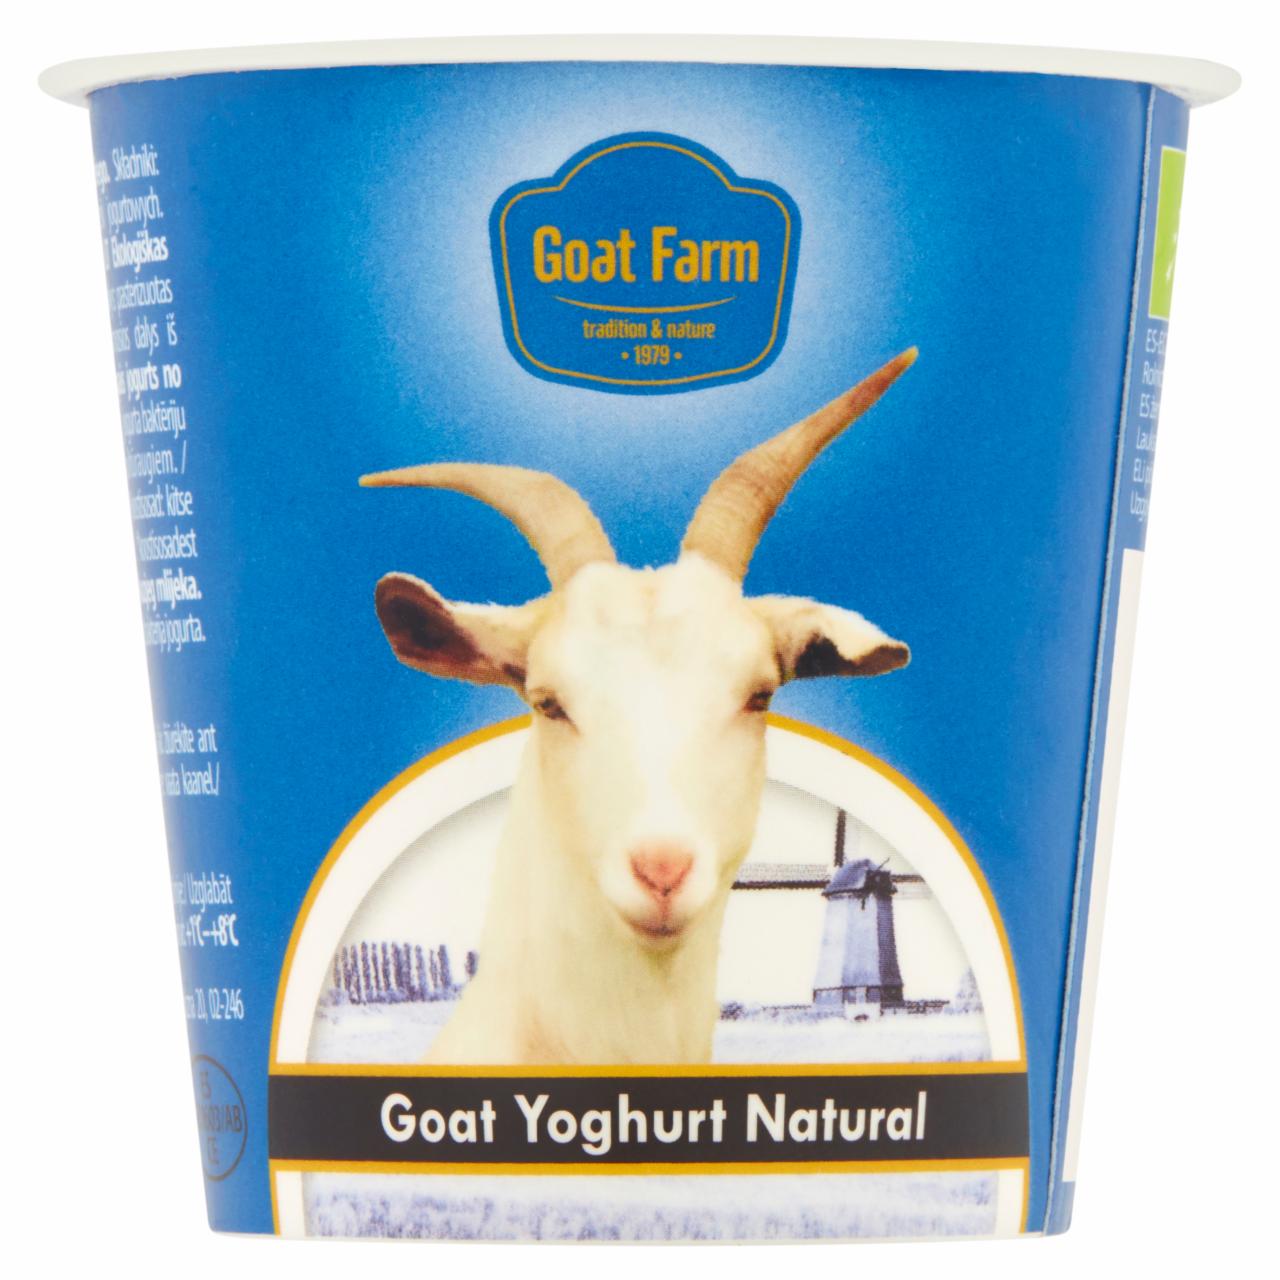 Zdjęcia - Goat Farm Ekologiczny jogurt naturalny z mleka koziego 125 g